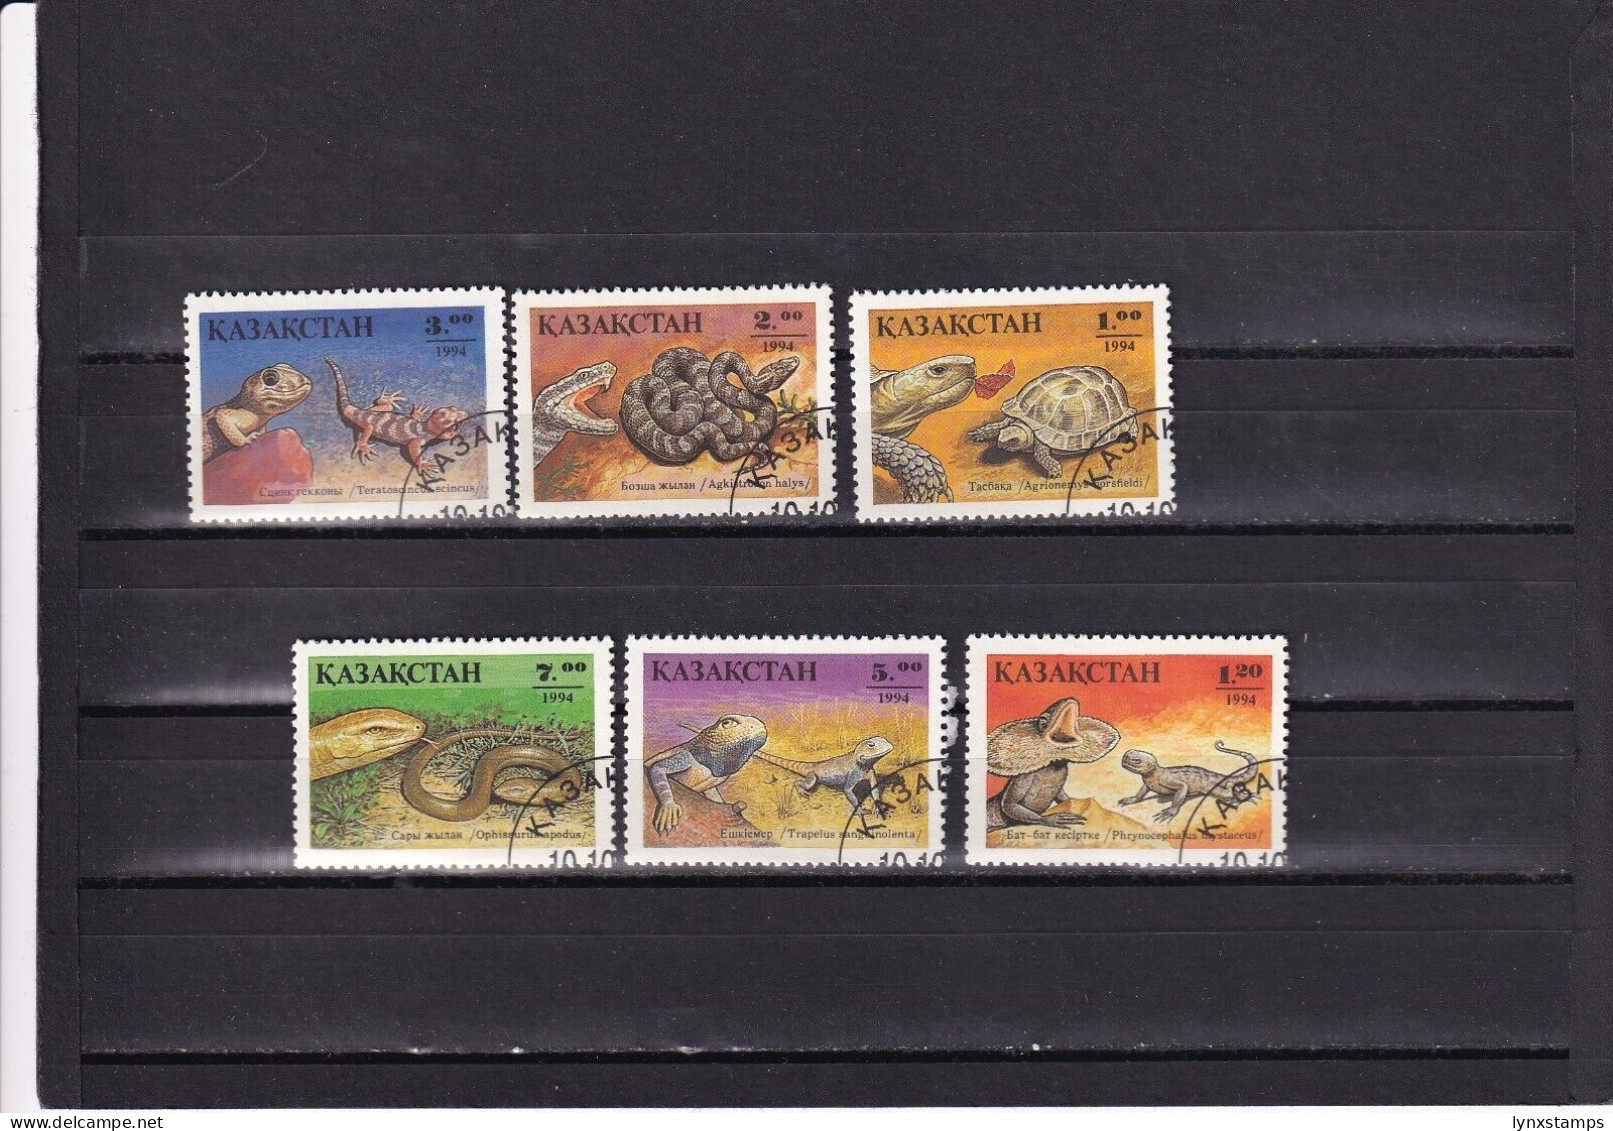 SA03 Kazakhstan 1994 Reptiles Used Stamps - Kazajstán